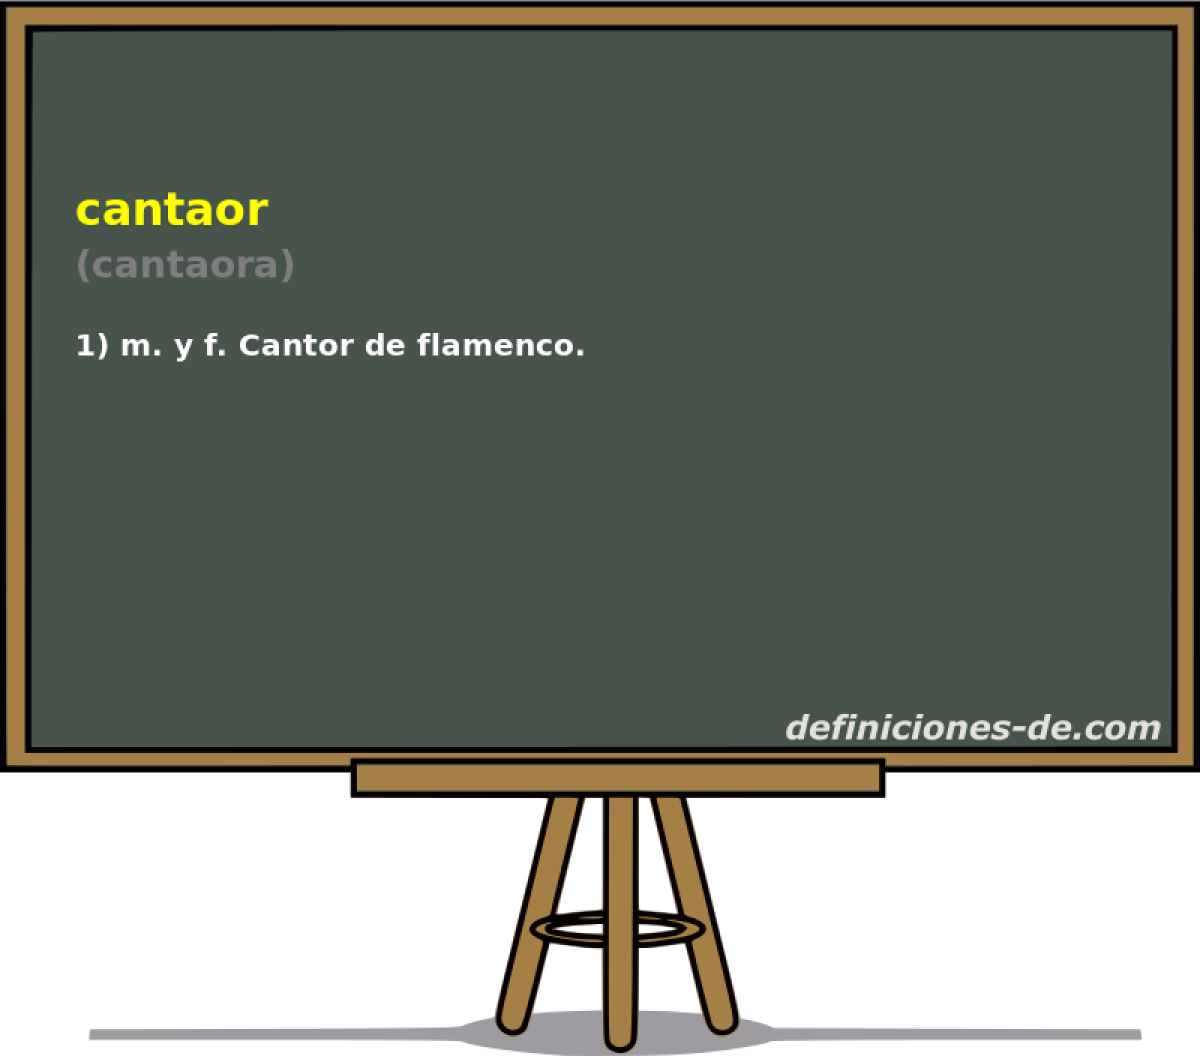 cantaor (cantaora)